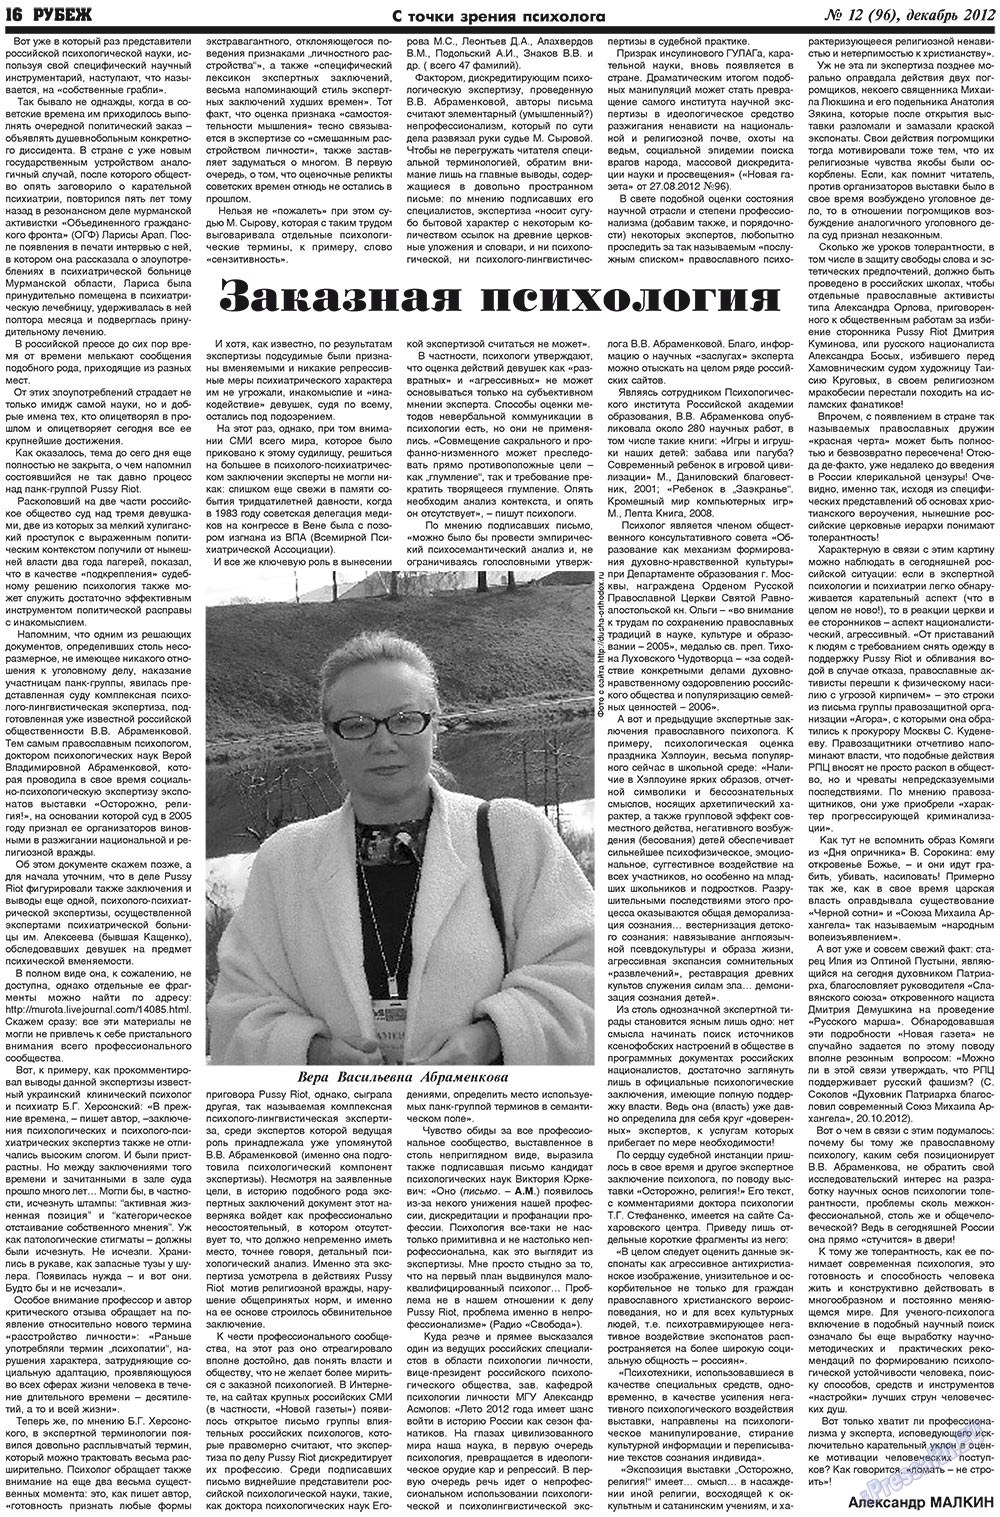 Рубеж (газета). 2012 год, номер 12, стр. 16